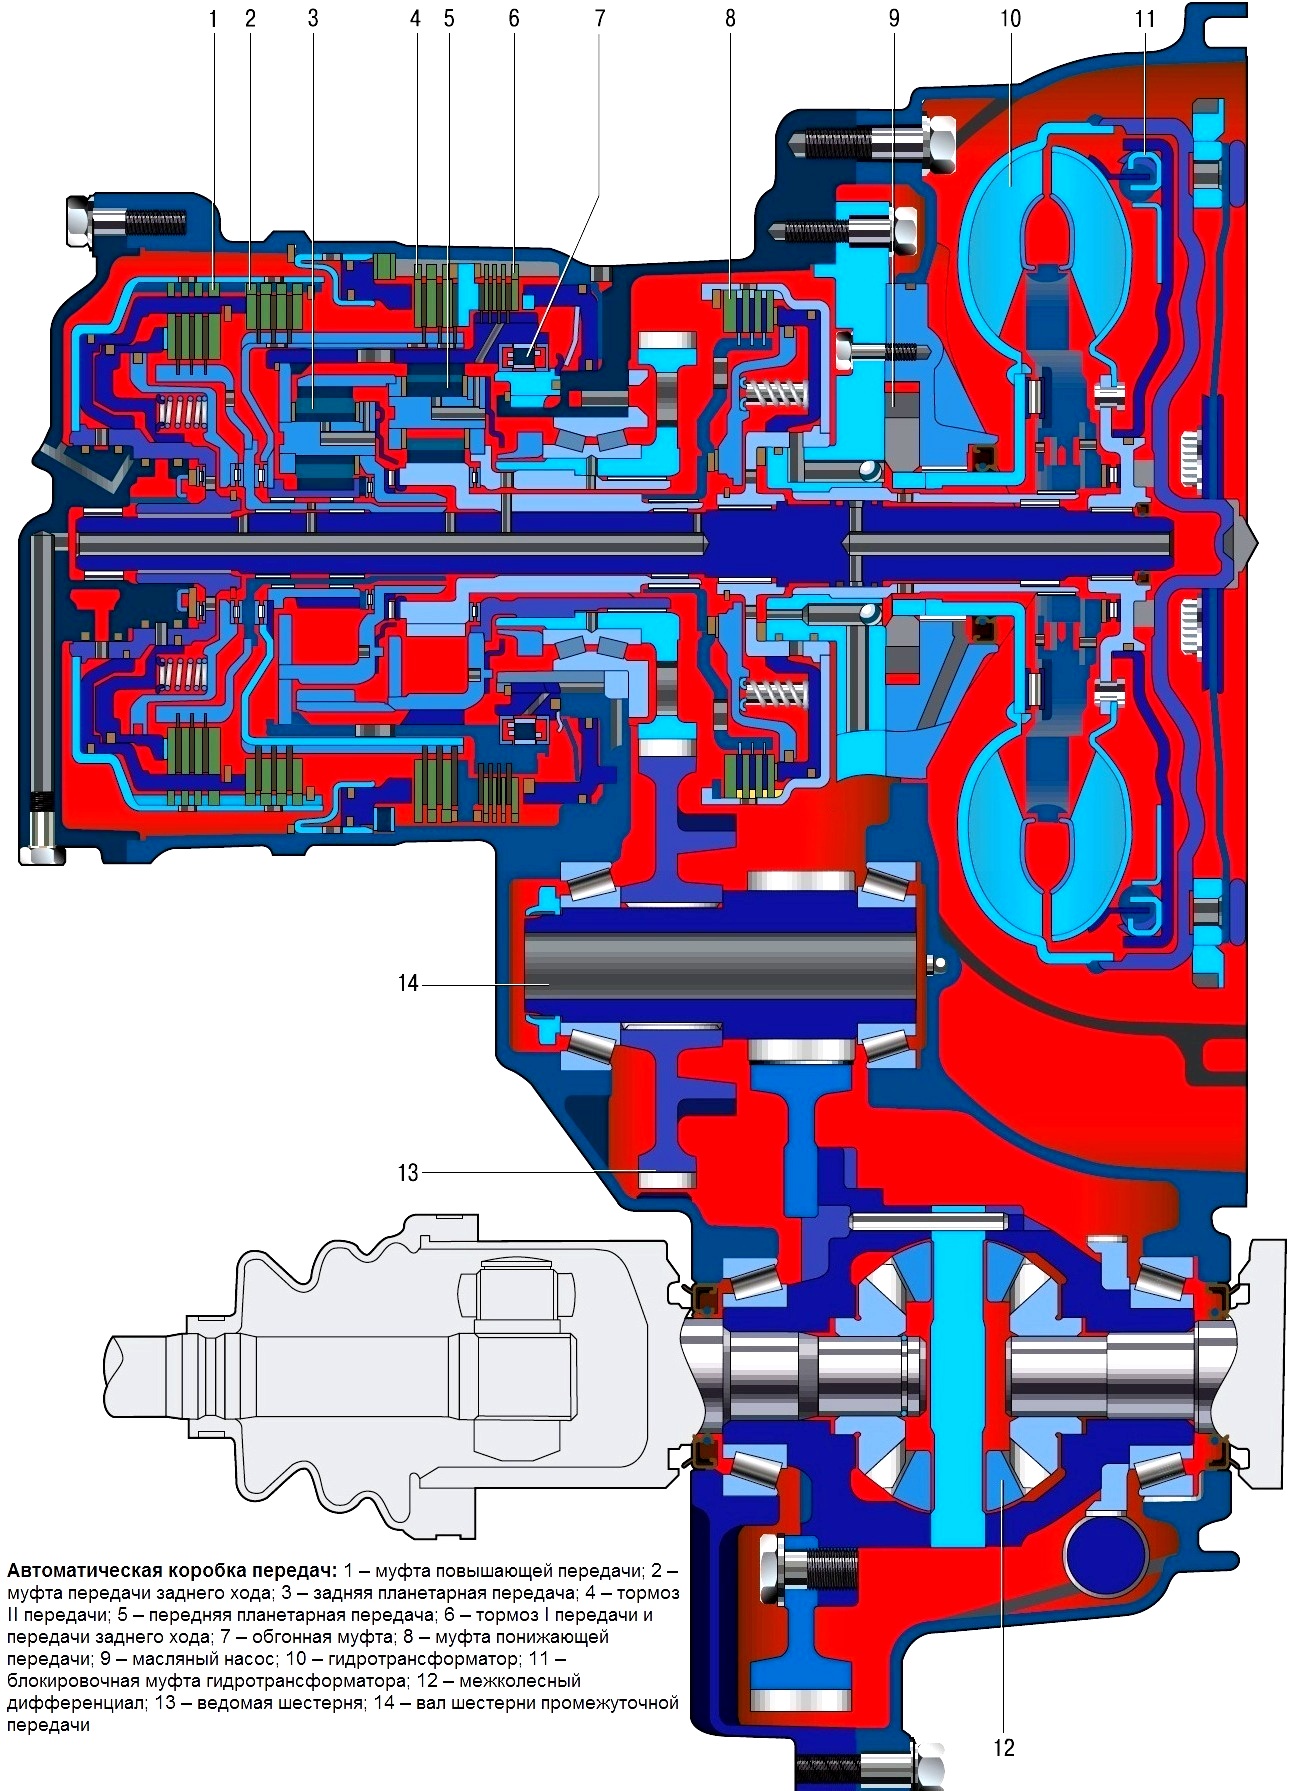 Design features of Hyundai Solaris automatic transmission